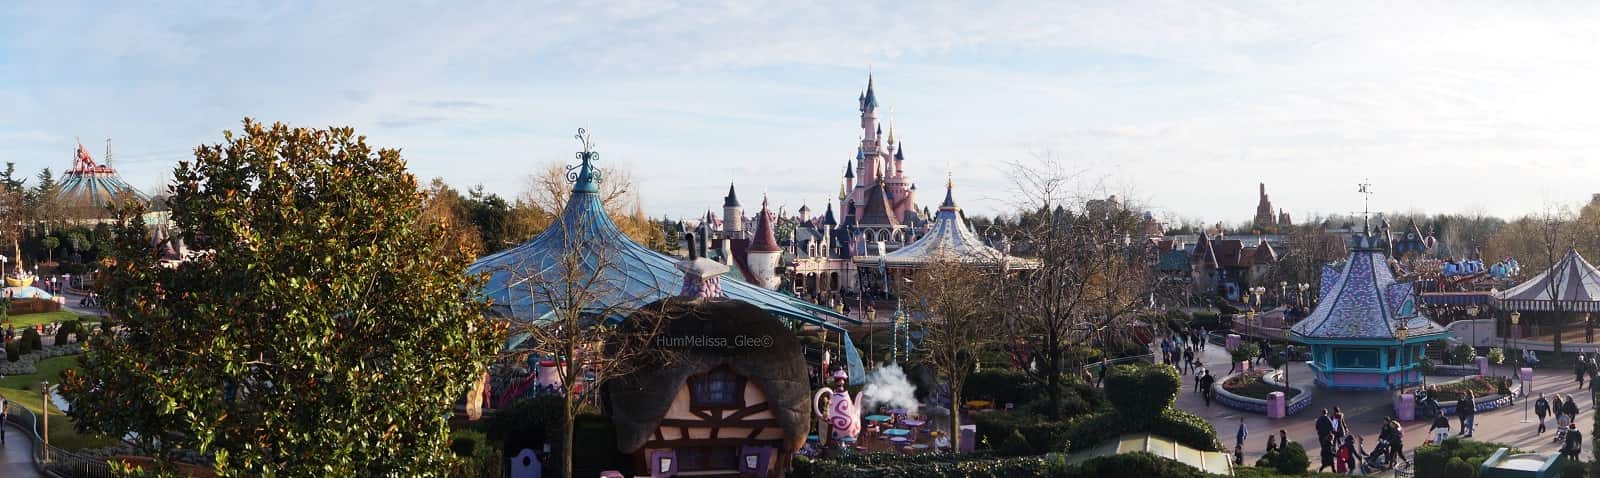 Disneyland París Fantasyland